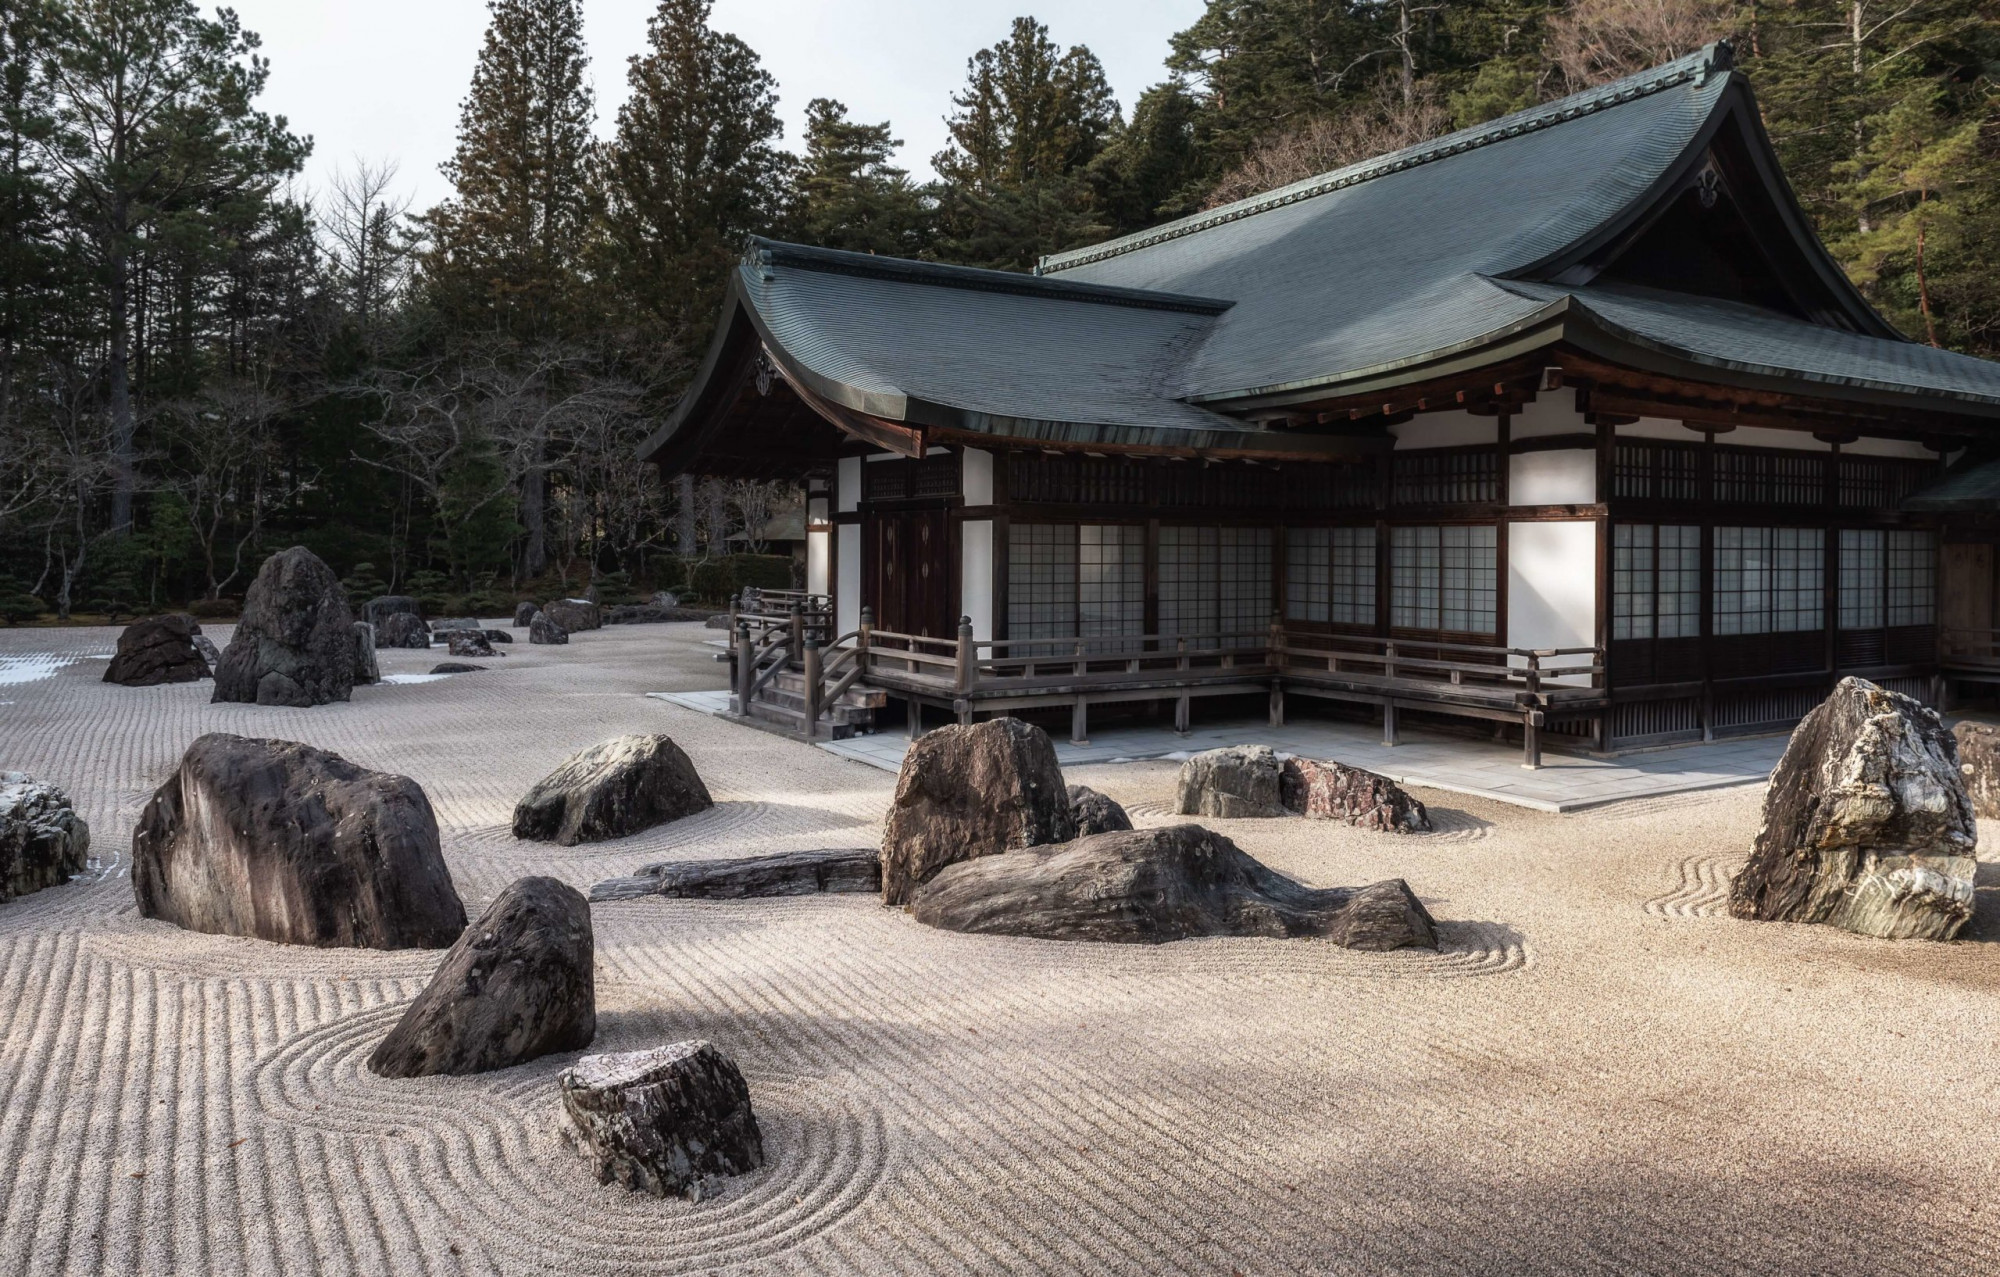 7. Koya-san Tốt nhất để khám phá những ngôi đền  Đi xe điện leo núi đến khu phức hợp tu viện Phật giáo linh thiêng Kōya-san, một cách thích hợp, có cảm giác như đi lên một thế giới khác. Có hơn một trăm ngôi đền ở đây, trong đó nổi bật là Oku-no-in , nơi những con đường đan xen giữa những cây mật mã cao chót vót và những bảo tháp bằng đá đã mòn theo thời gian phủ đầy rêu và địa y. Các ngôi chùa khác mang đến một trải nghiệm khác: cơ hội nghỉ qua đêm, dùng bữa với các món ăn chay truyền thống của Phật giáo và thức dậy sớm để thiền buổi sáng với các nhà sư thường trú.  Mẹo lập kế hoạch: Mặc dù các ngôi chùa và đền thờ của Nhật Bản không có quy định về trang phục nhưng du khách nên giữ yên tĩnh tương đối trong những không gian linh thiêng này.